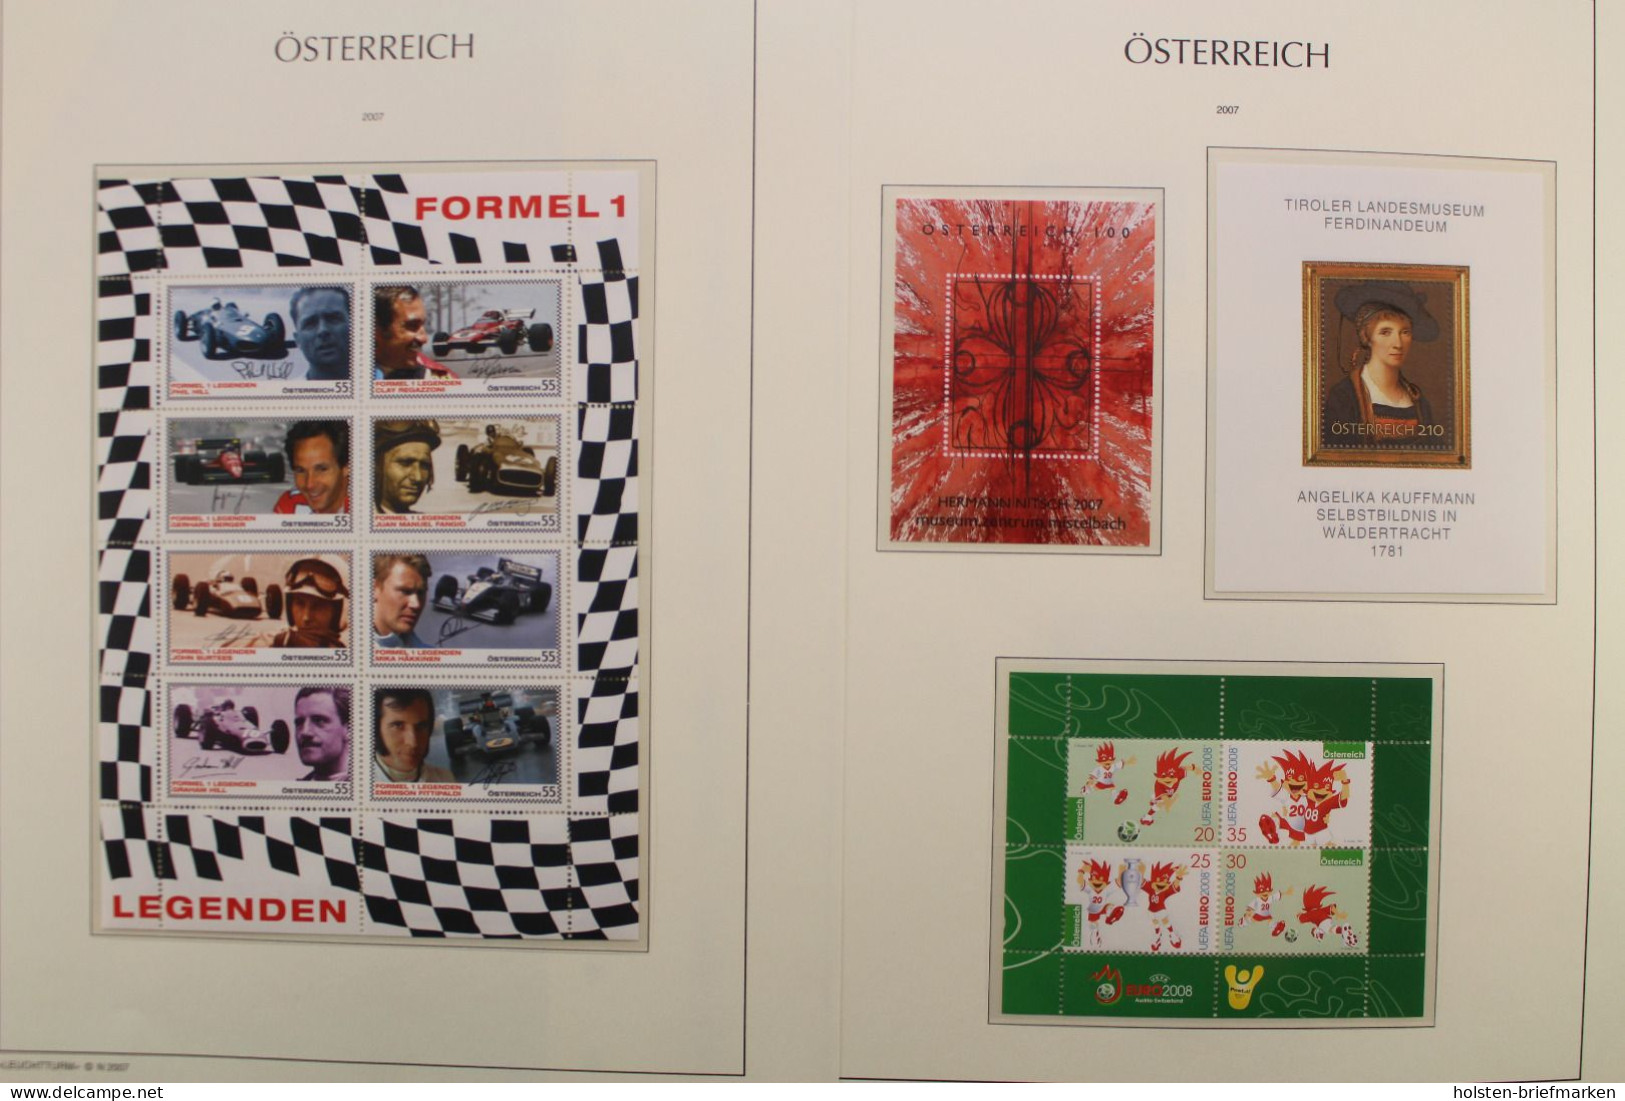 Österreich 2005-2009, postfrische Sammlung auf Leuchtturm Vordrucken